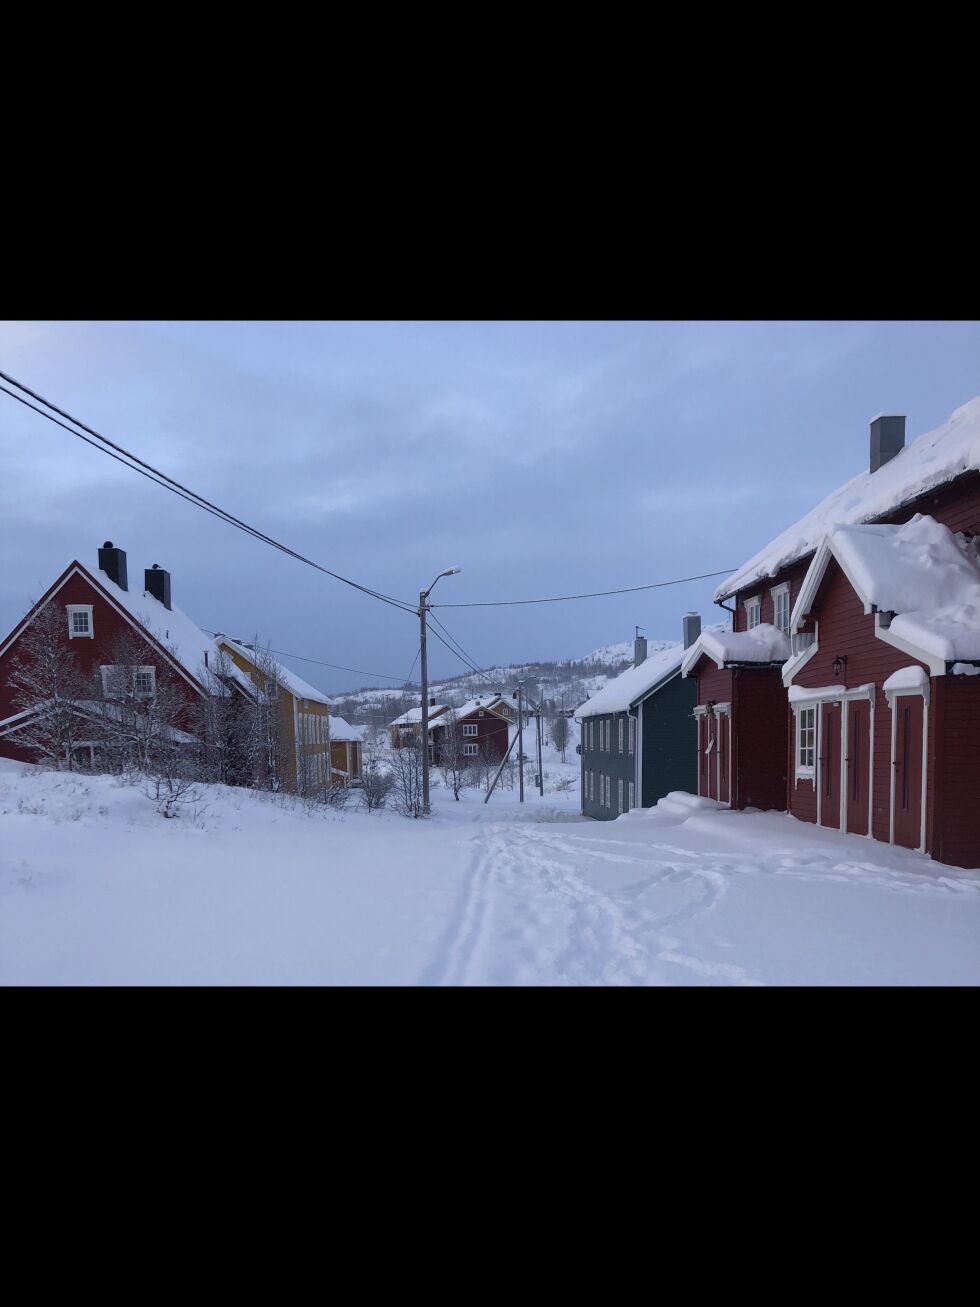 Meteorologene er tidlig ute med å spå hvor det blir hvit jul. Kysten av Nordland ser ut til å få snø, og meteorologene sier også at man som regel ikke skal langt inn i landet for det blir hvitt selv om det er bart ved kysten. Bildet er fra snøsikre Jakobsbakken i Sulitjelma. Foto: Mona Mosti